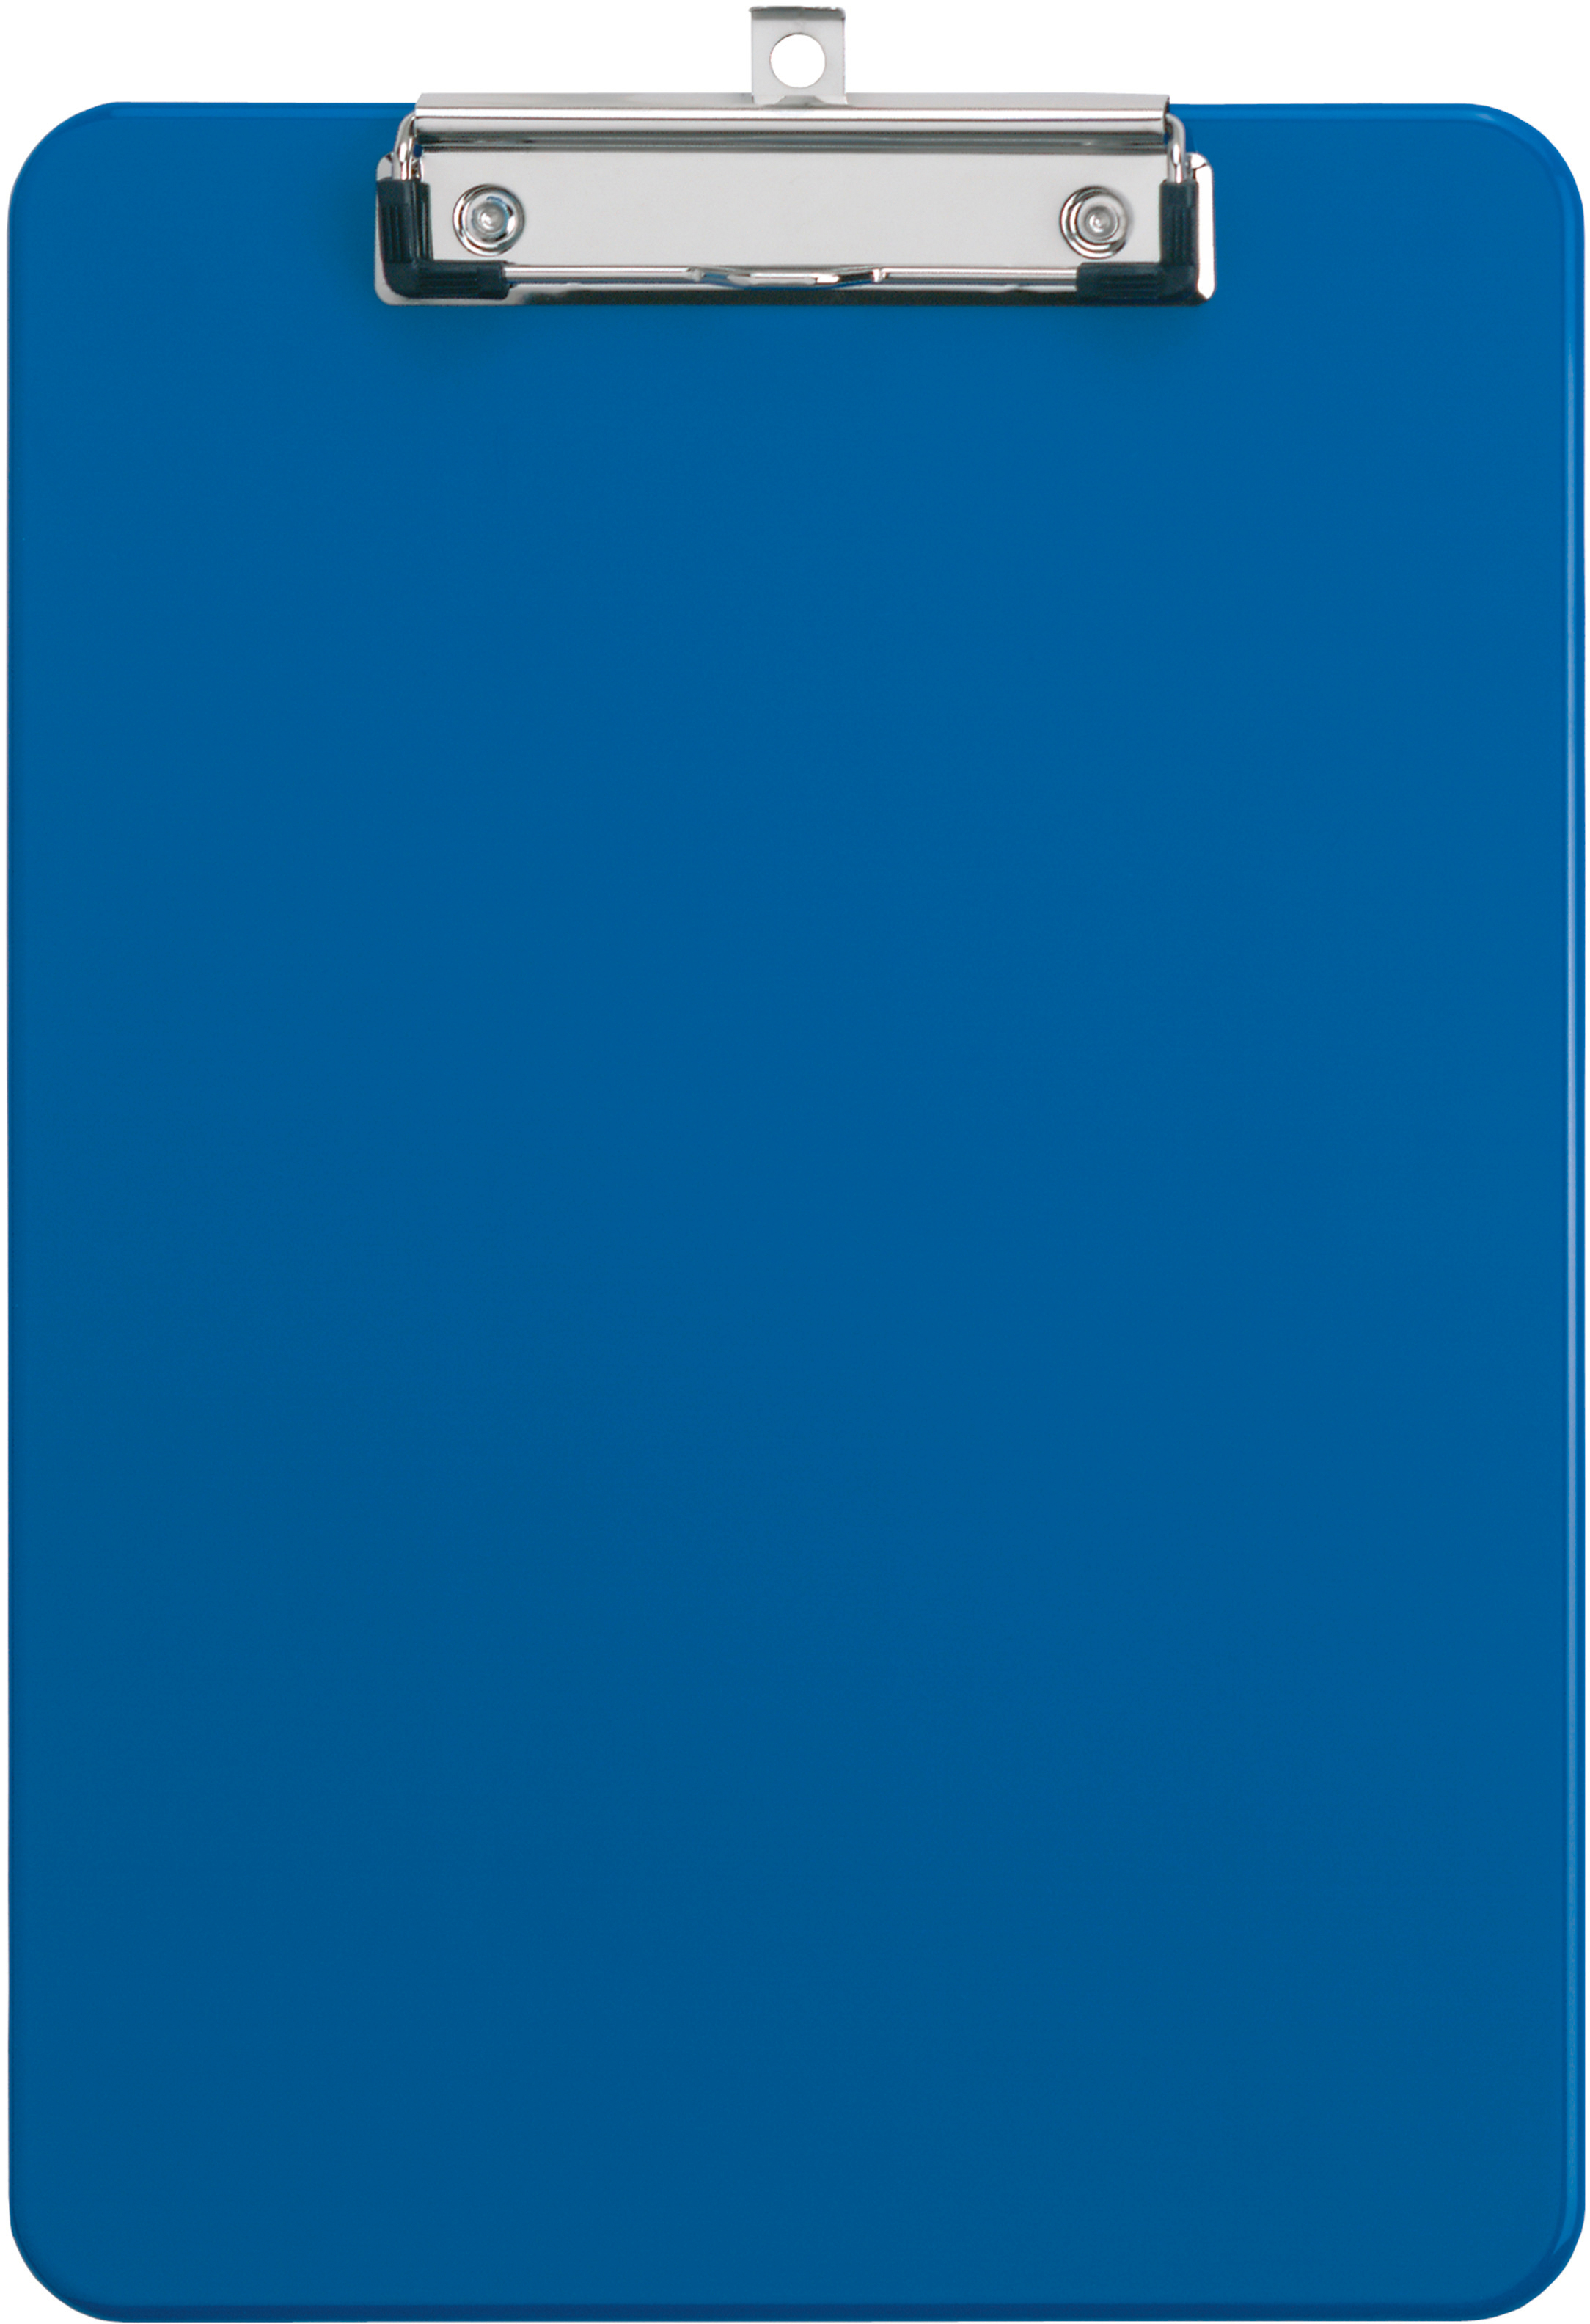 MAUL Sous-main PP A4 2340537 avec clip, bleu avec clip, bleu